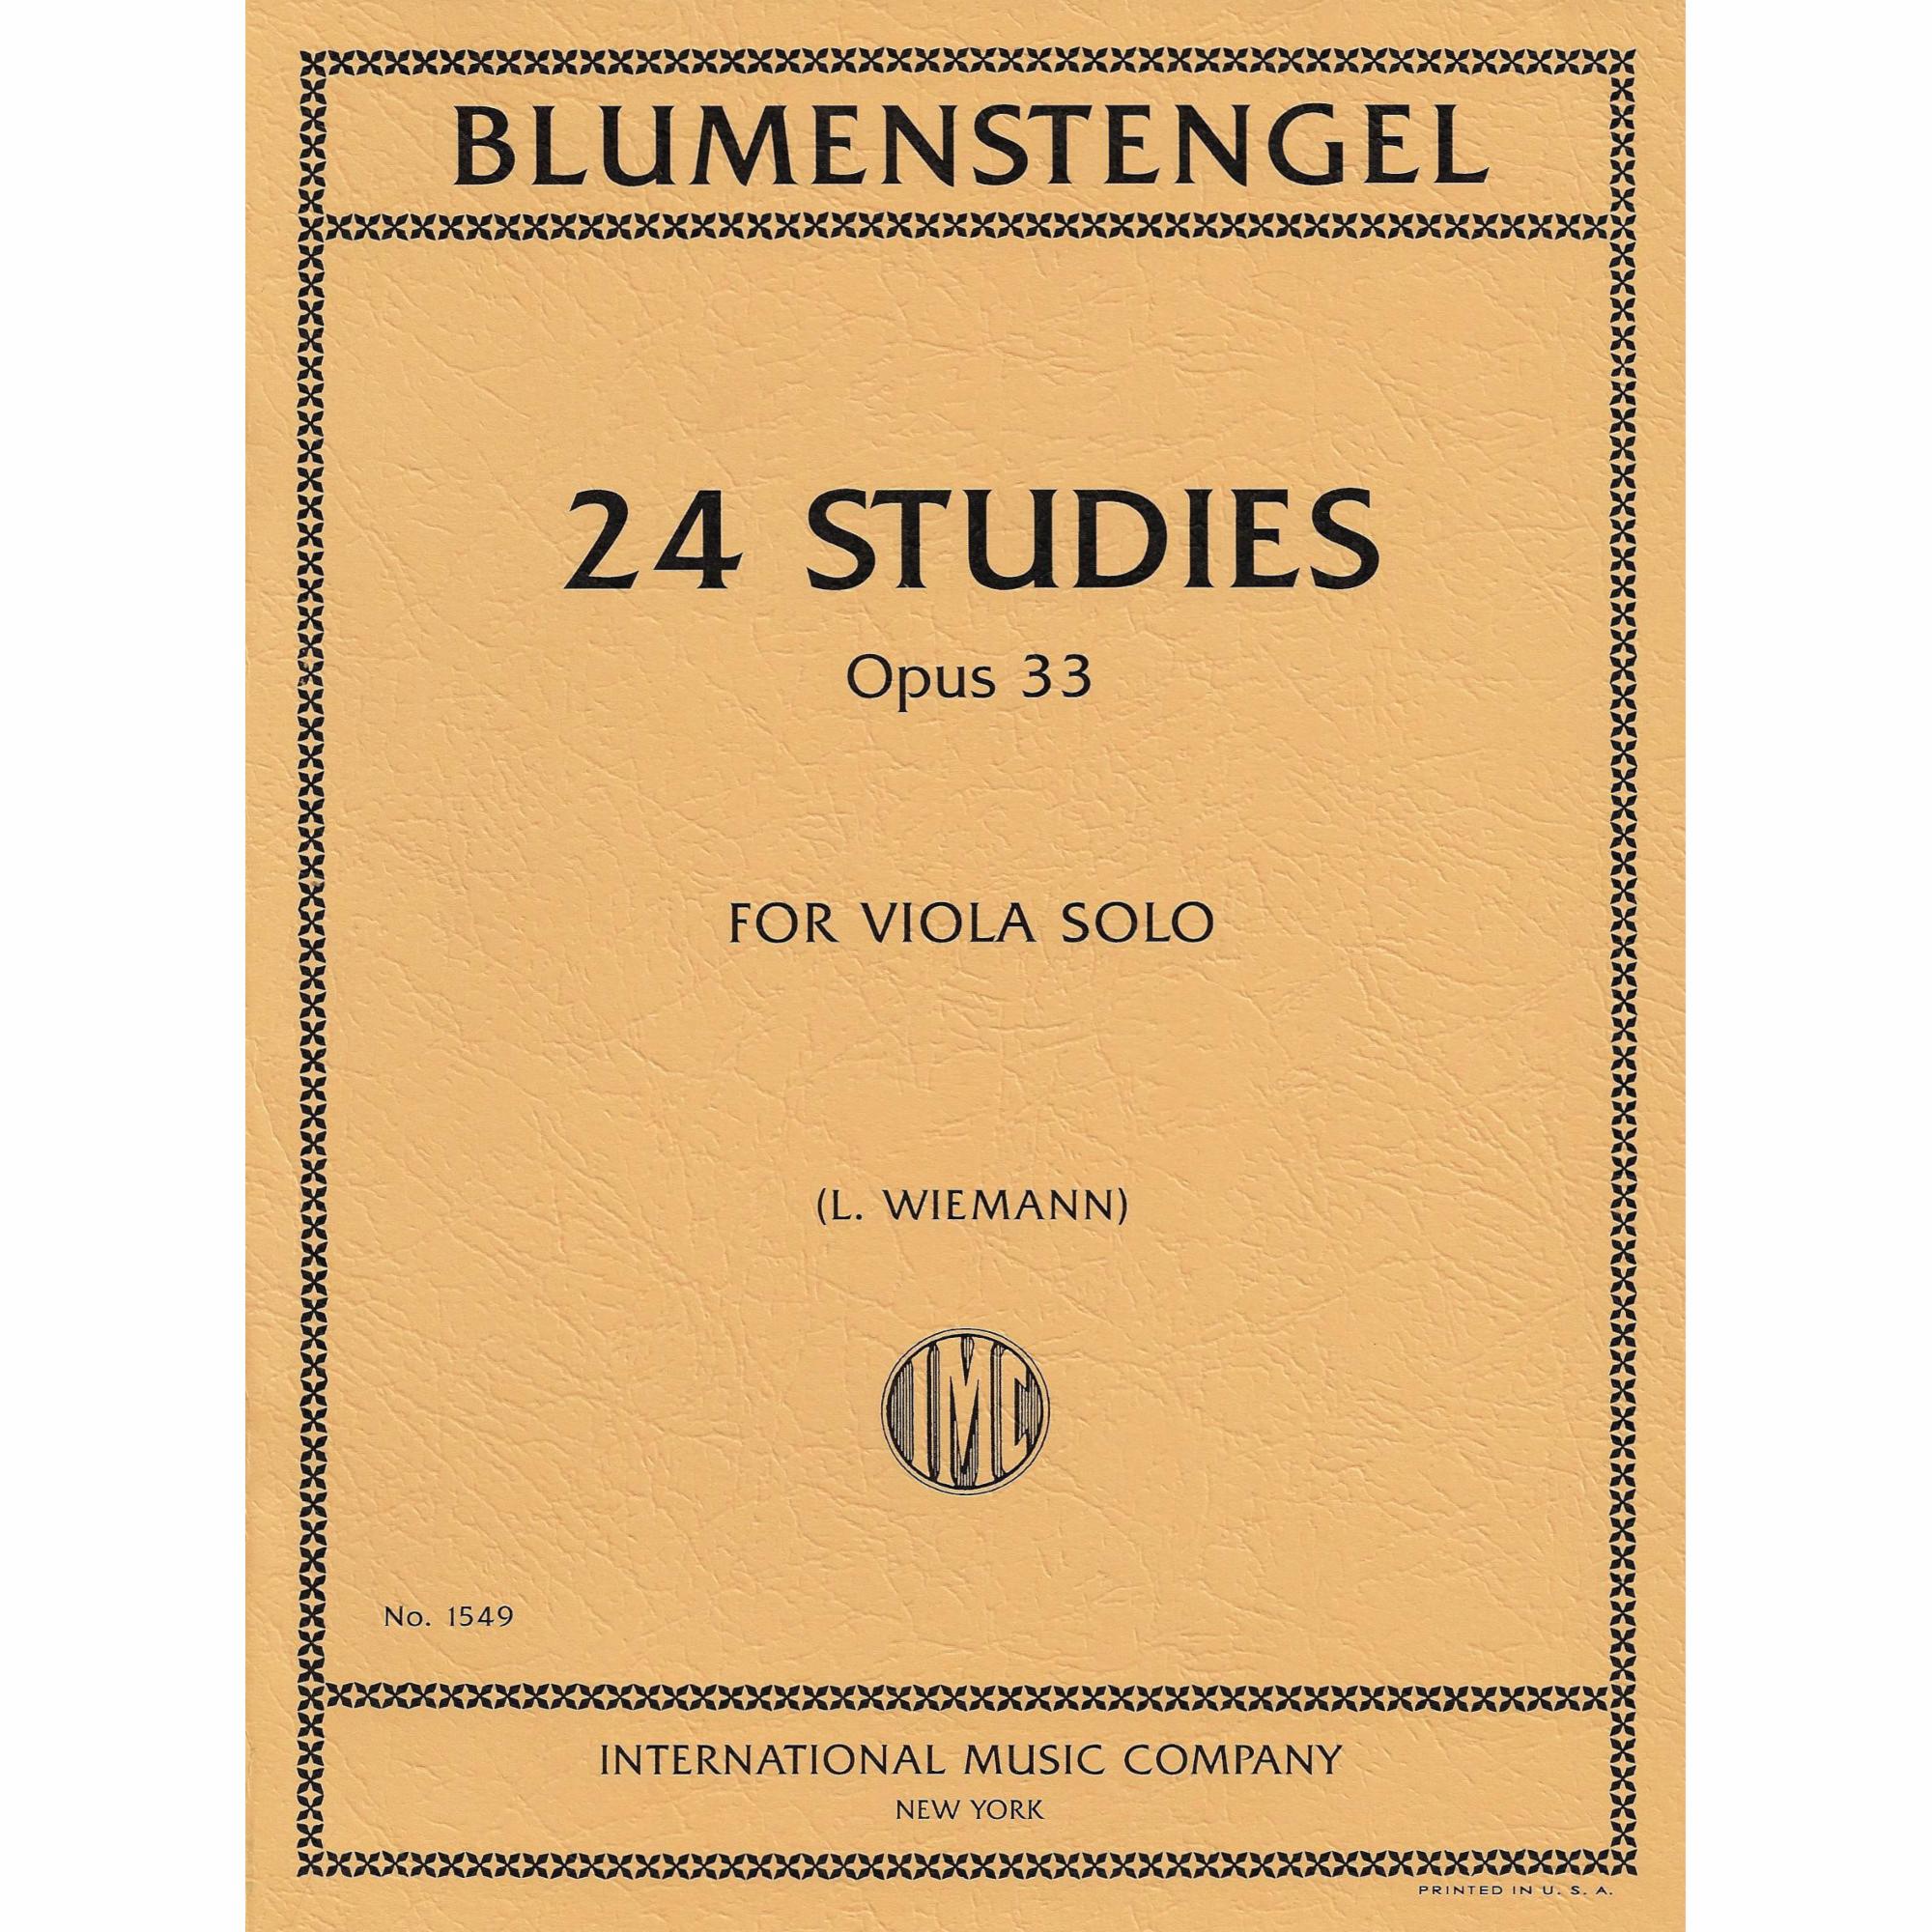 Blumenstengel -- 24 Studies, Op. 33 for Viola